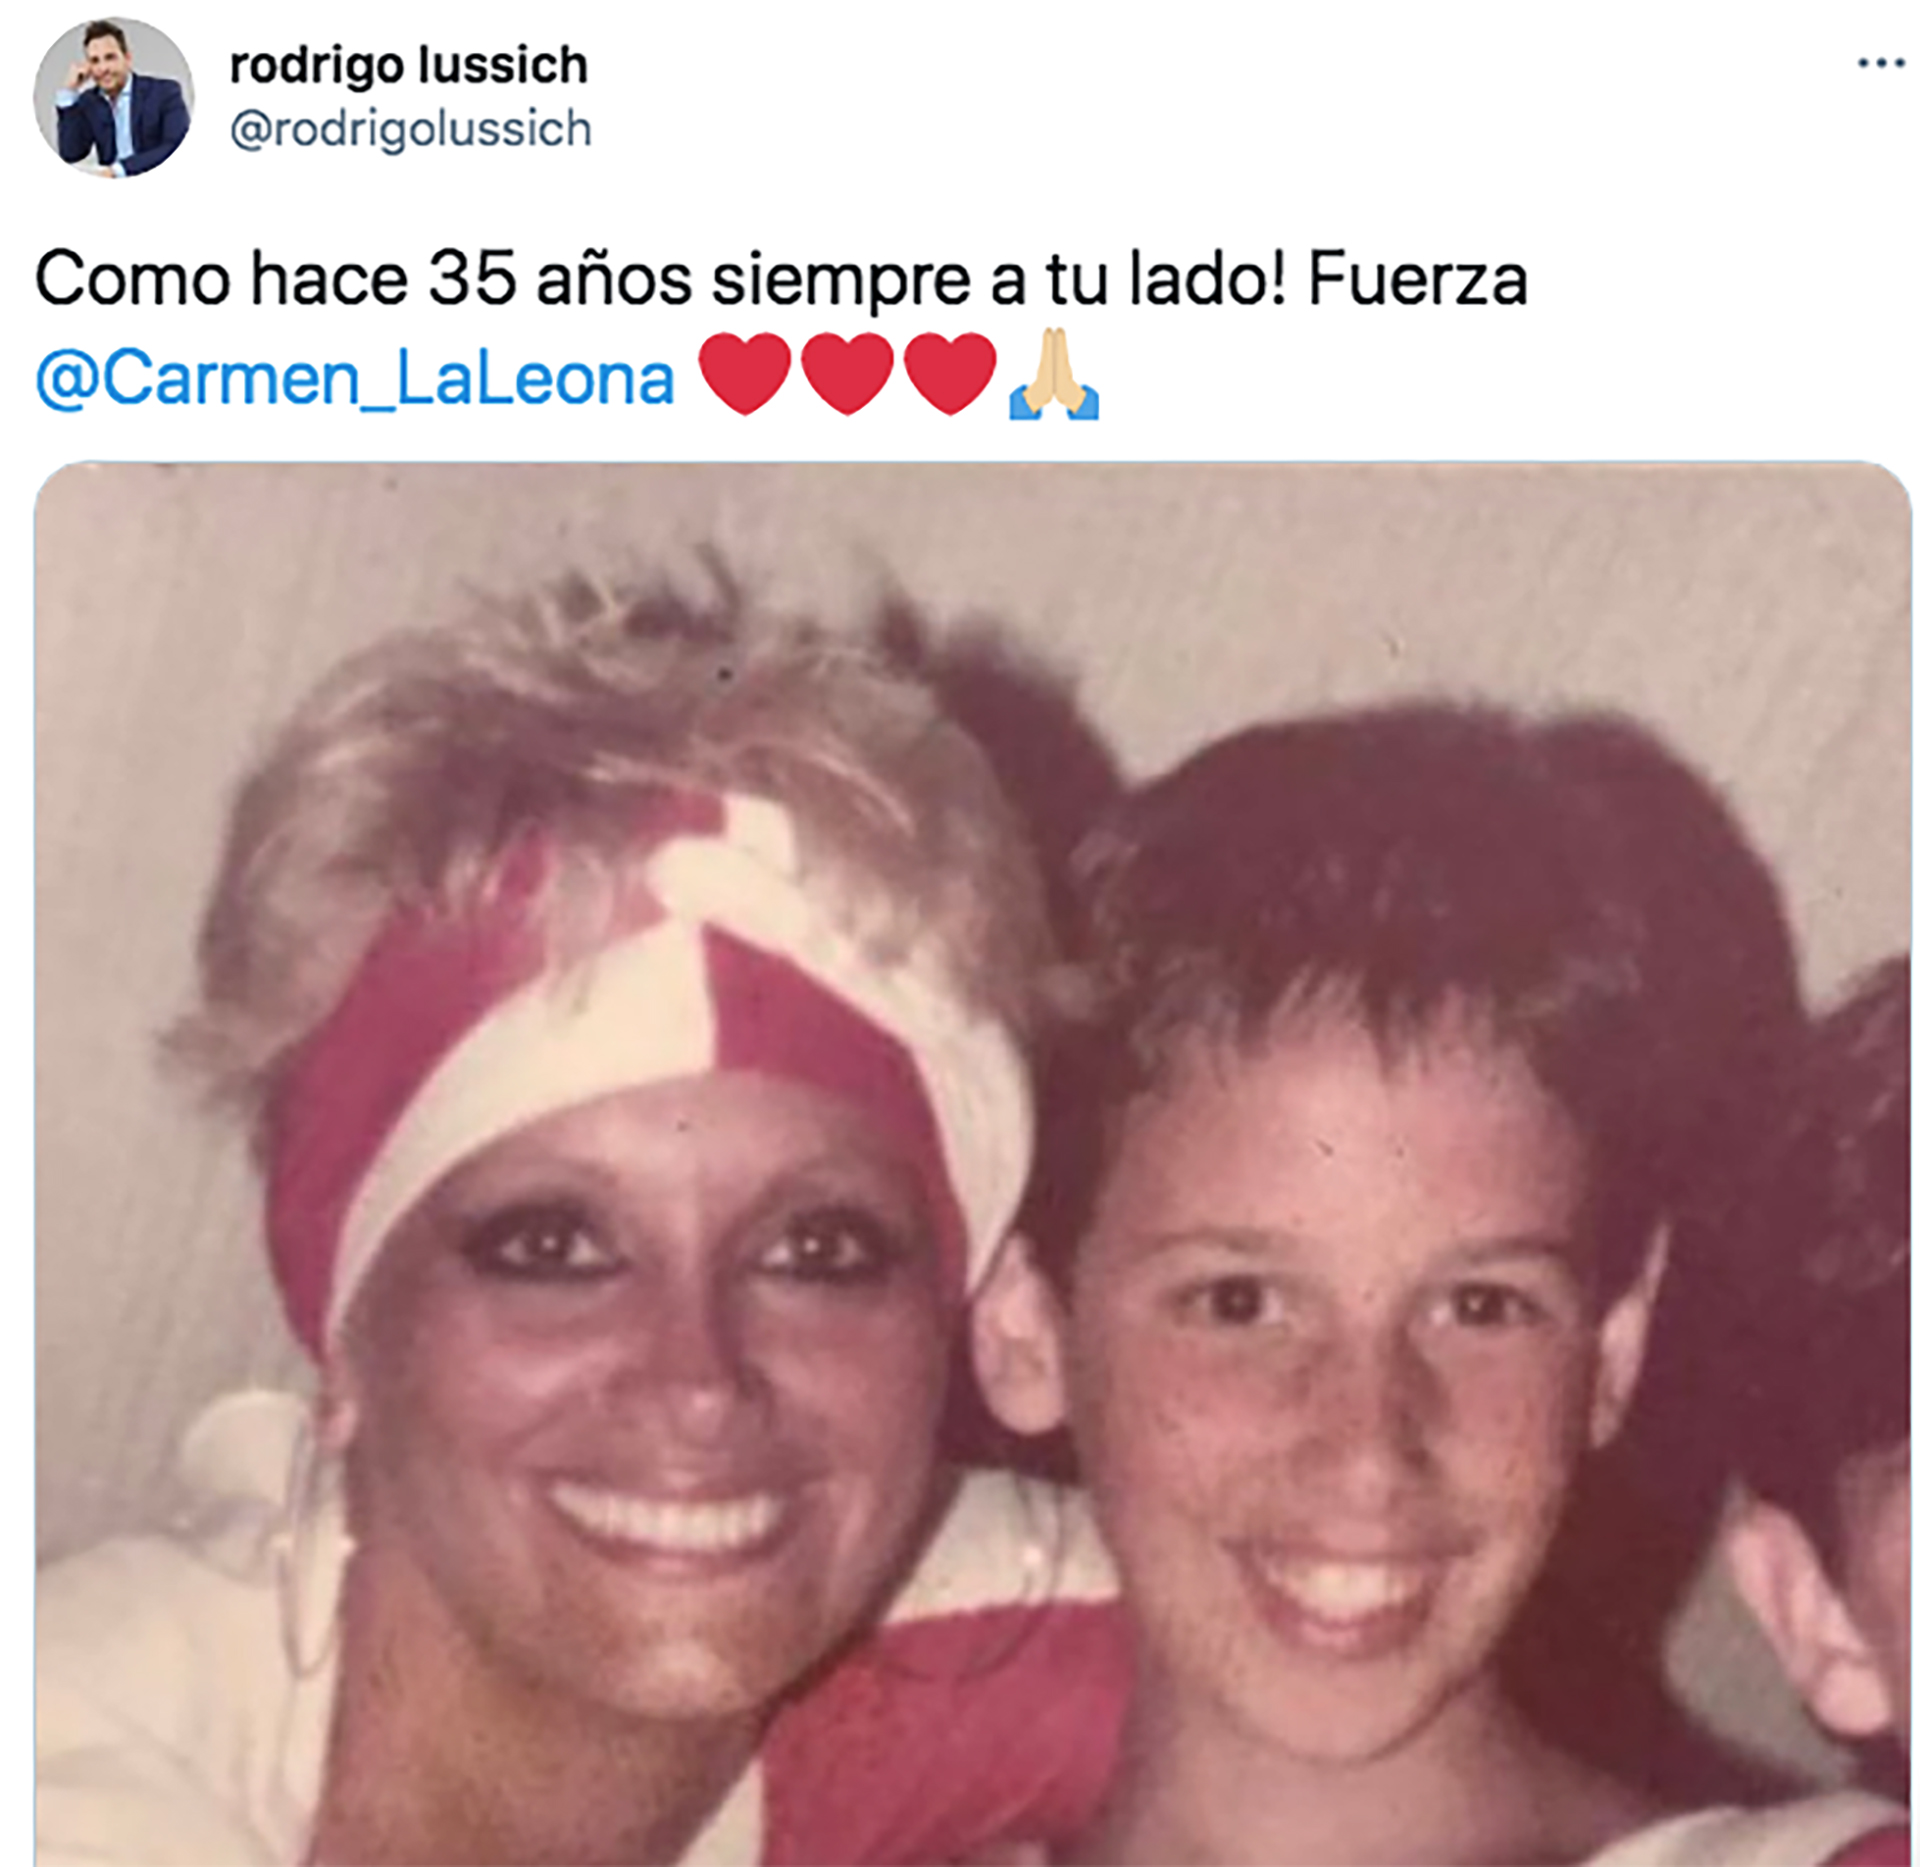 Los buenos deseos de Rodrigo Lussich (Twitter)